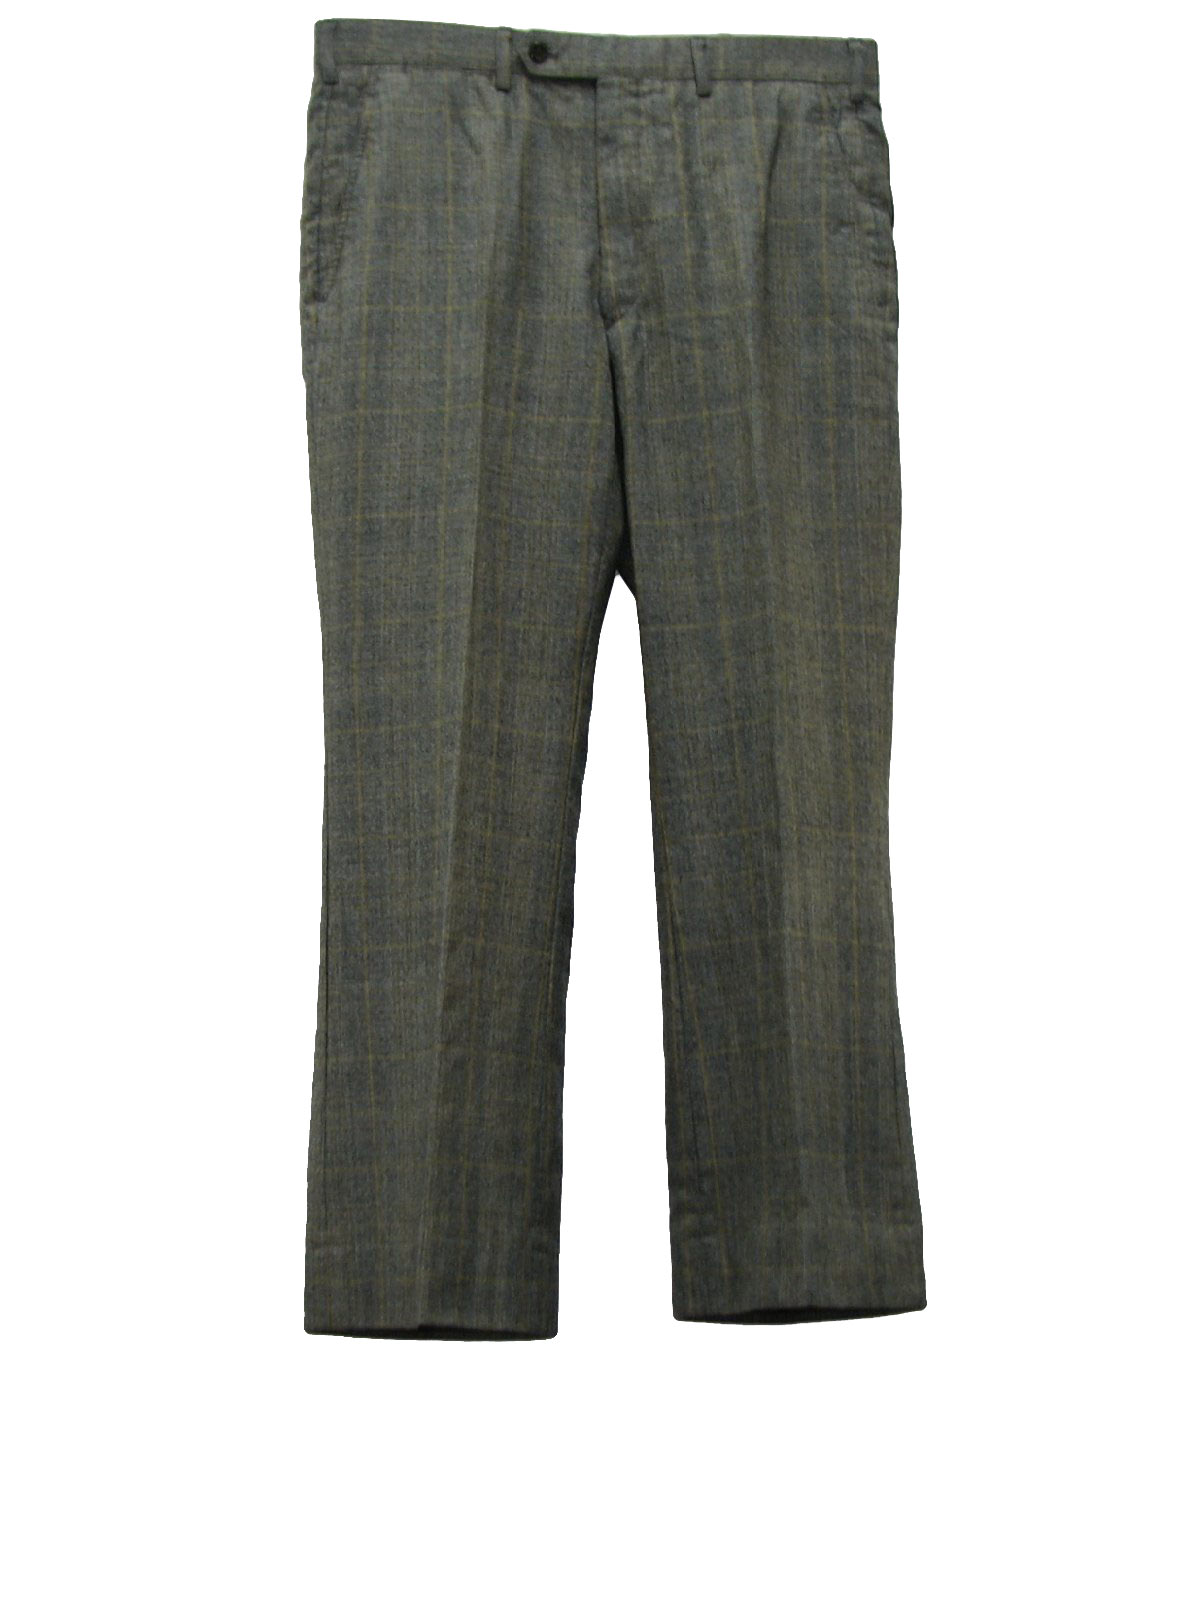 70s Flared Pants / Flares: 70s -No Label- Mens light brown, olivine ...